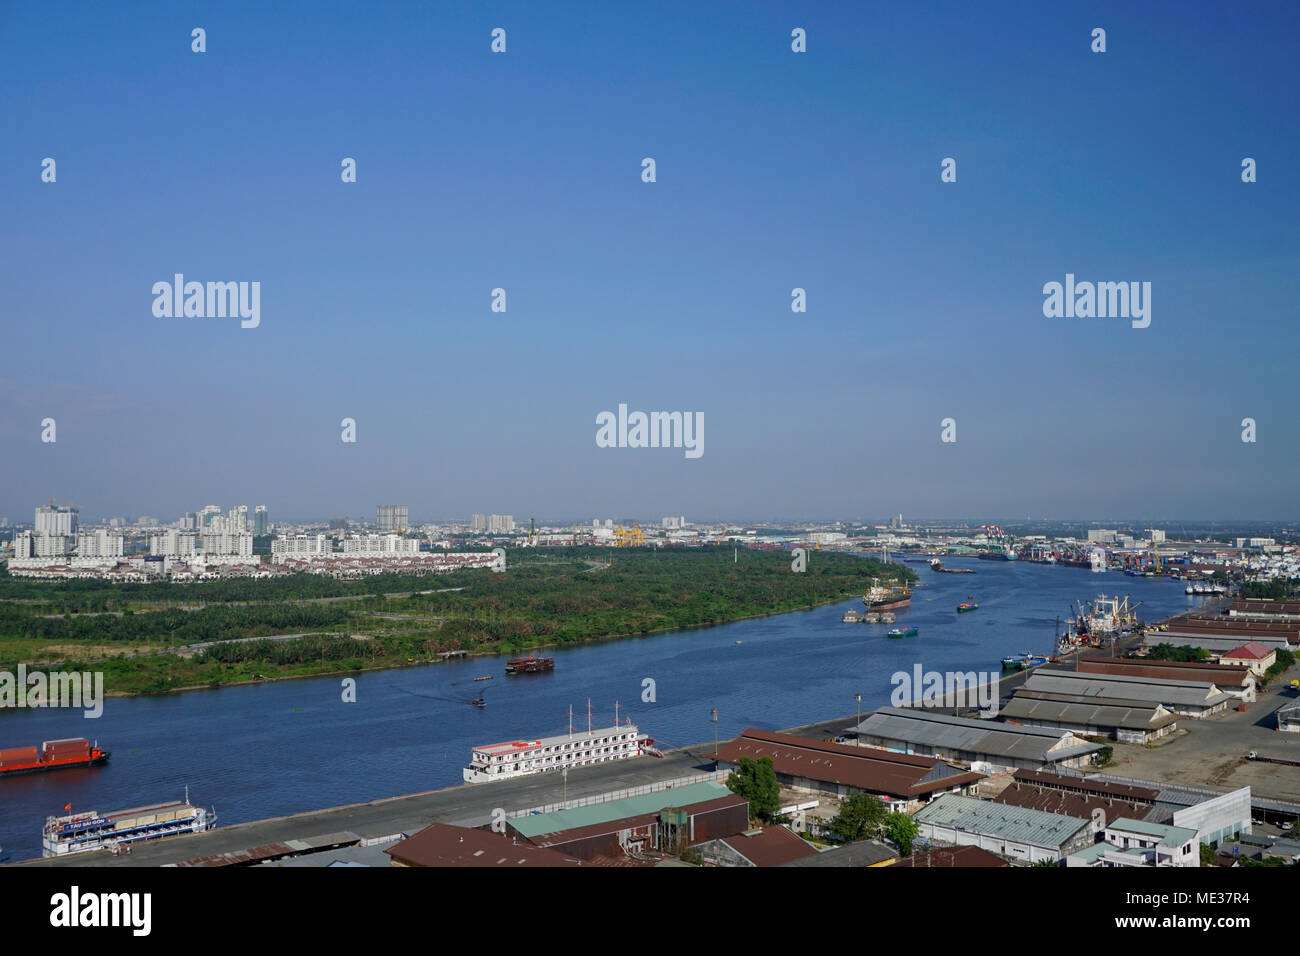 Il Fiume Saigon barche, la città di Ho Chi Minh (Saigon) Vietnam Foto Stock